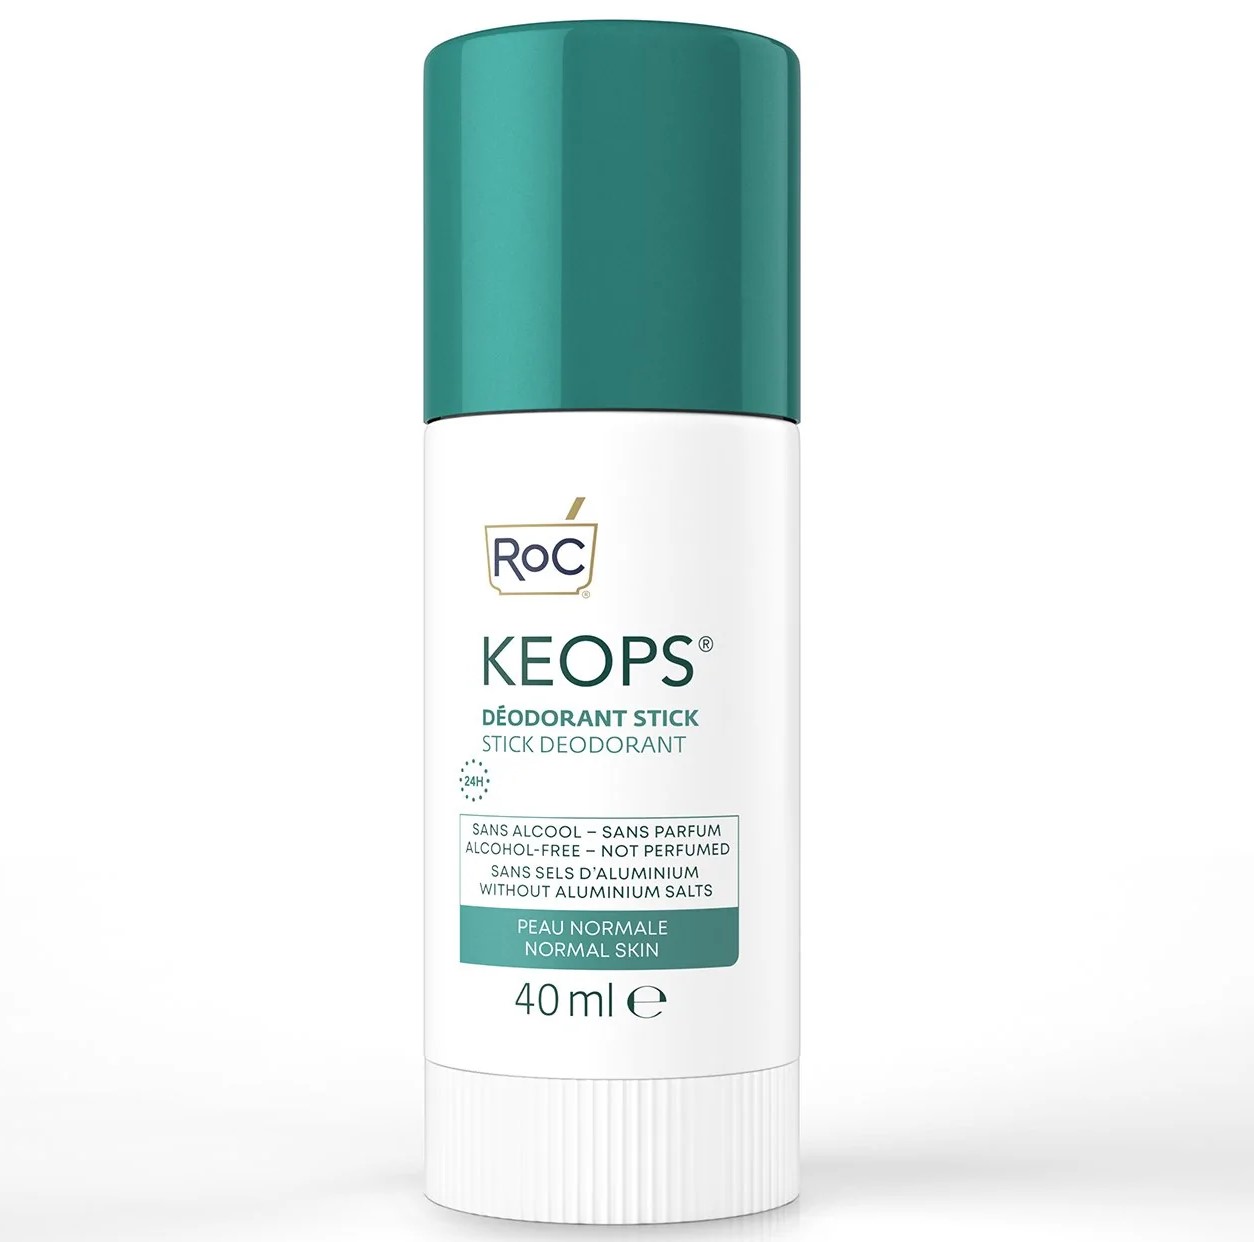 Keops Desodorante Stick Piel Normal. El Desodorante Keops en stick para todo tipo de pieles proporciona una eficacia de 24 horas